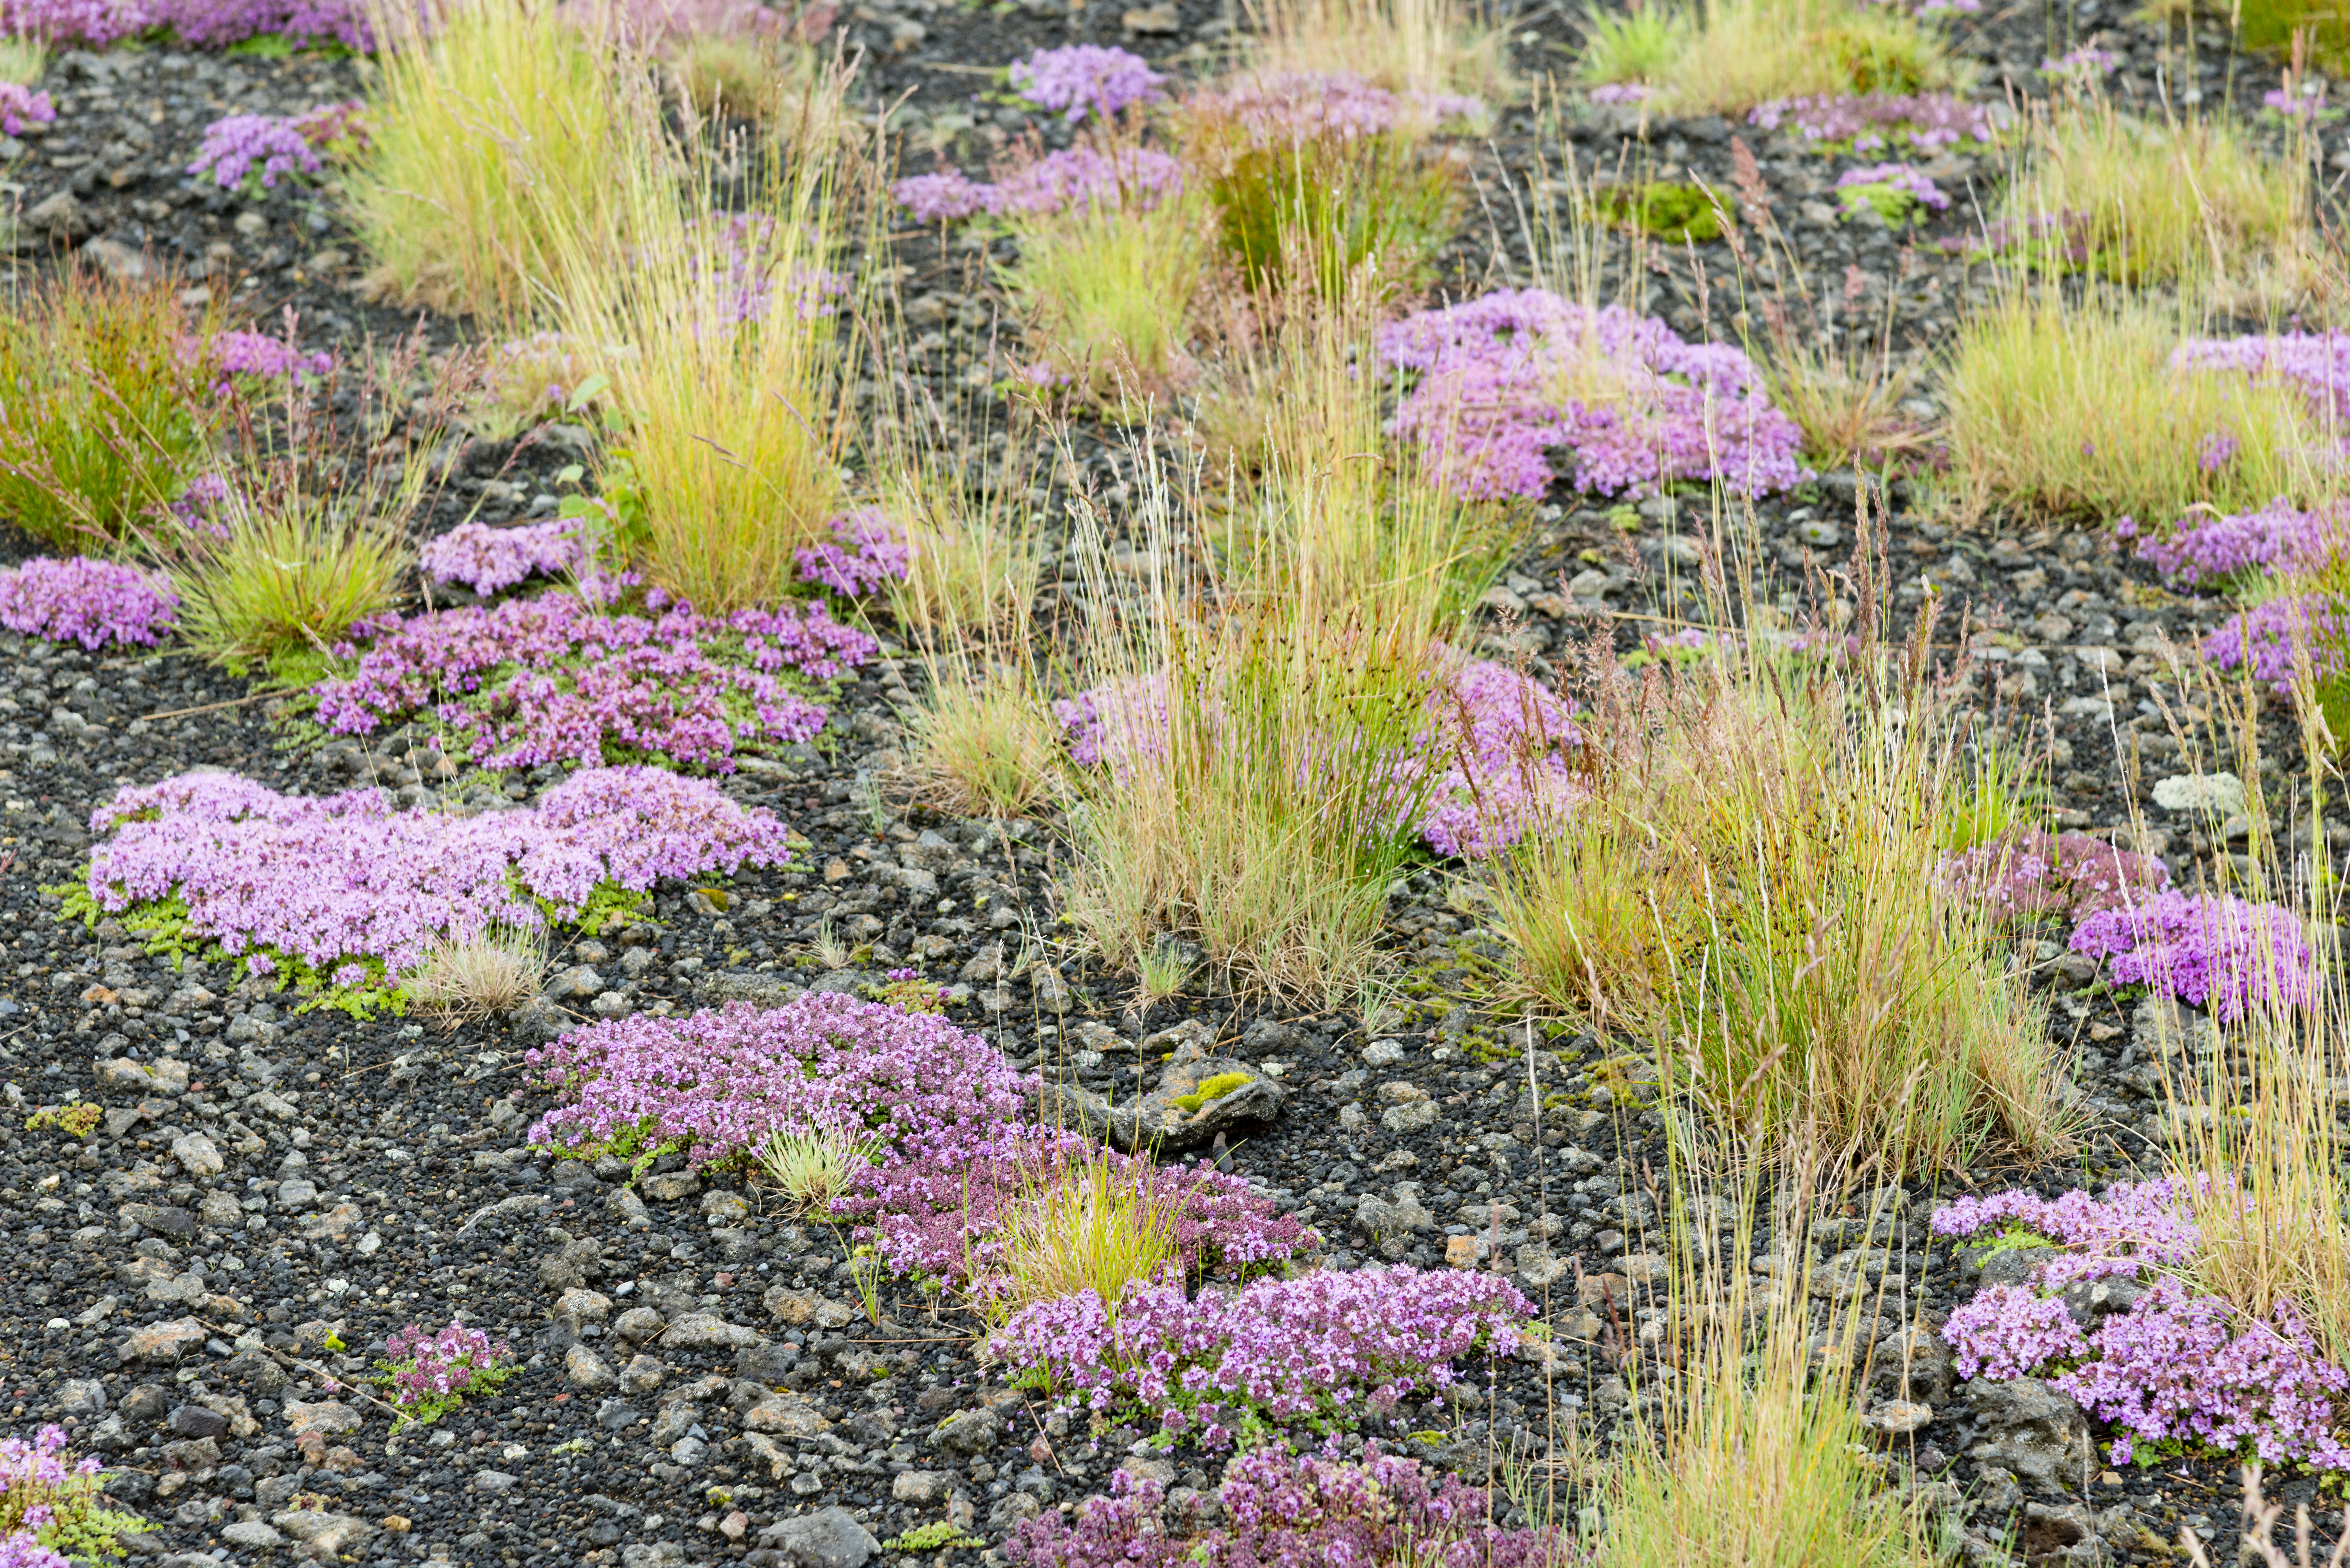 Südisland Moos und Blumen in Rosa auf kiesigem Untergrund mit vereinzelten Grasbüscheln.